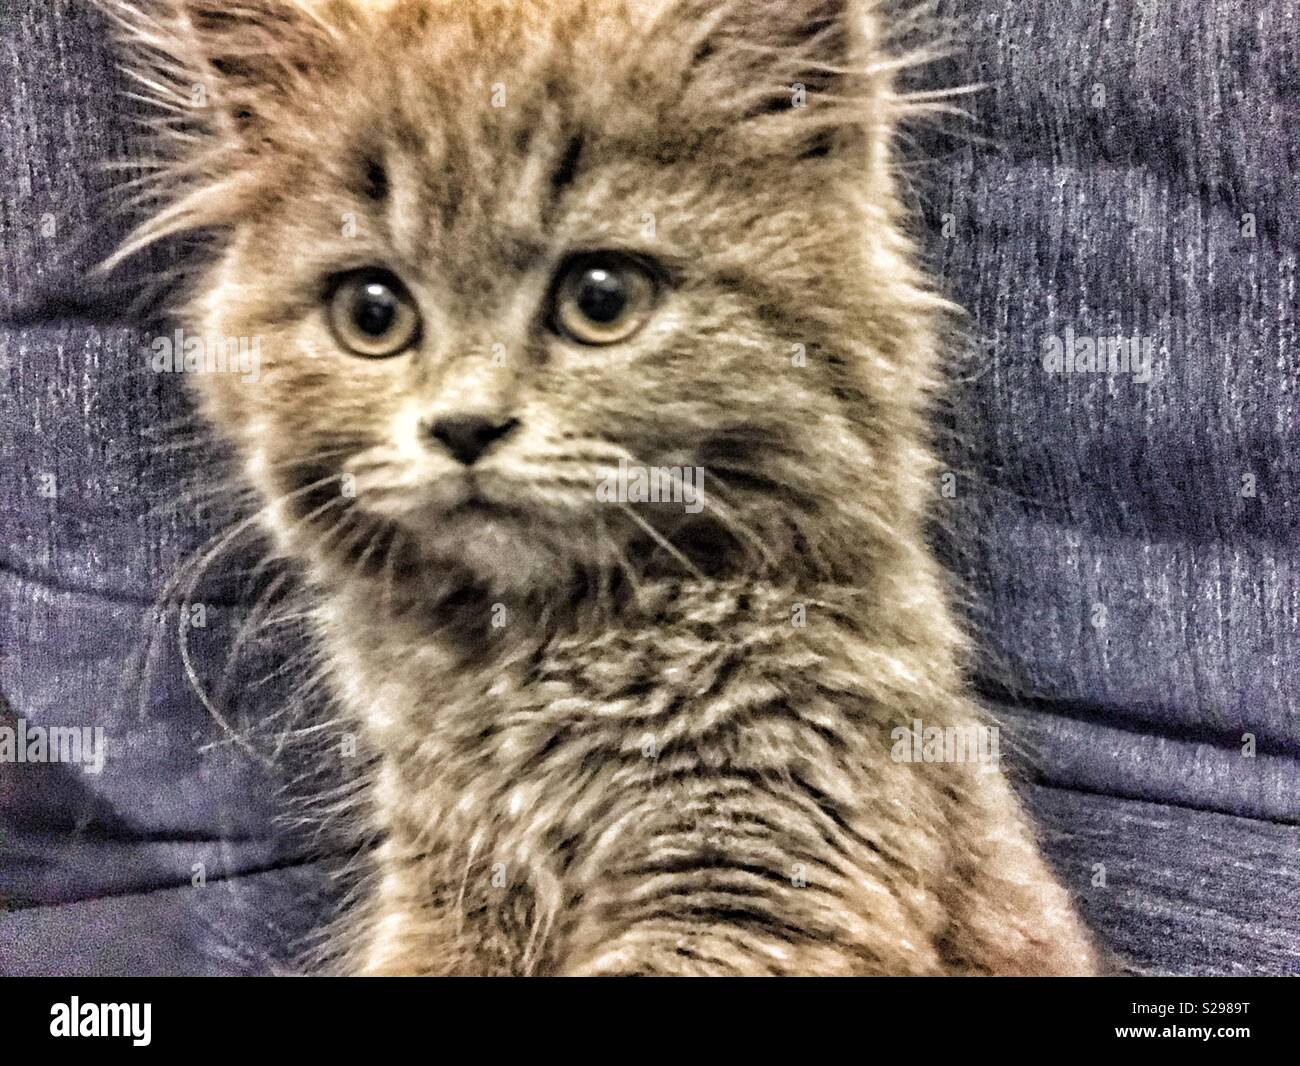 British kitty cat portrait Stock Photo